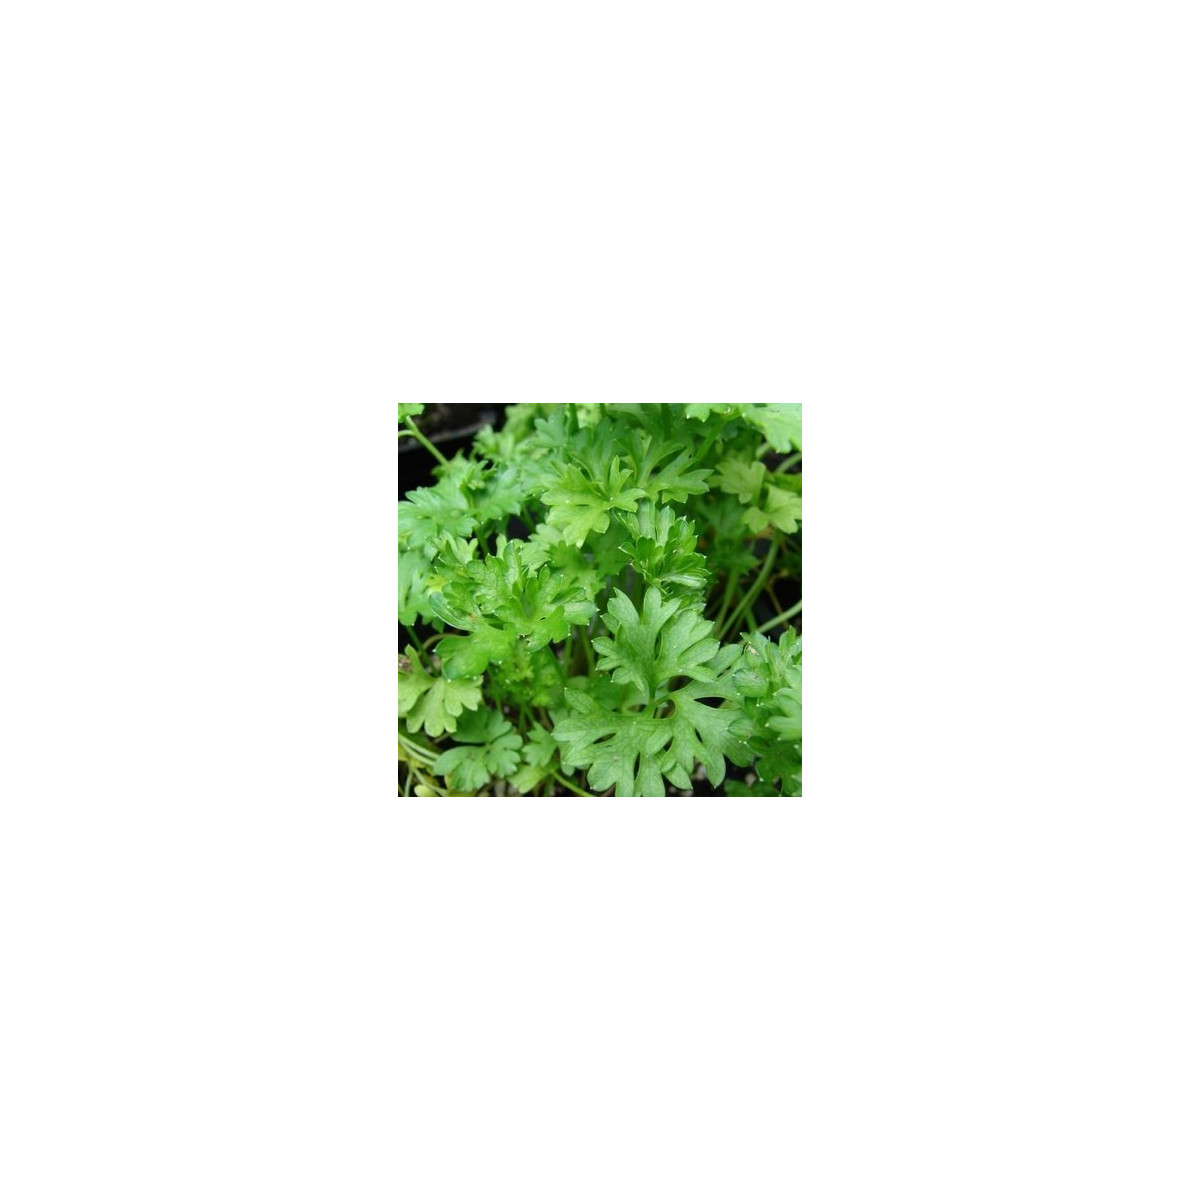 Semena petržele – Petržel naťová kadeřavá – Petroselinum crispum convar